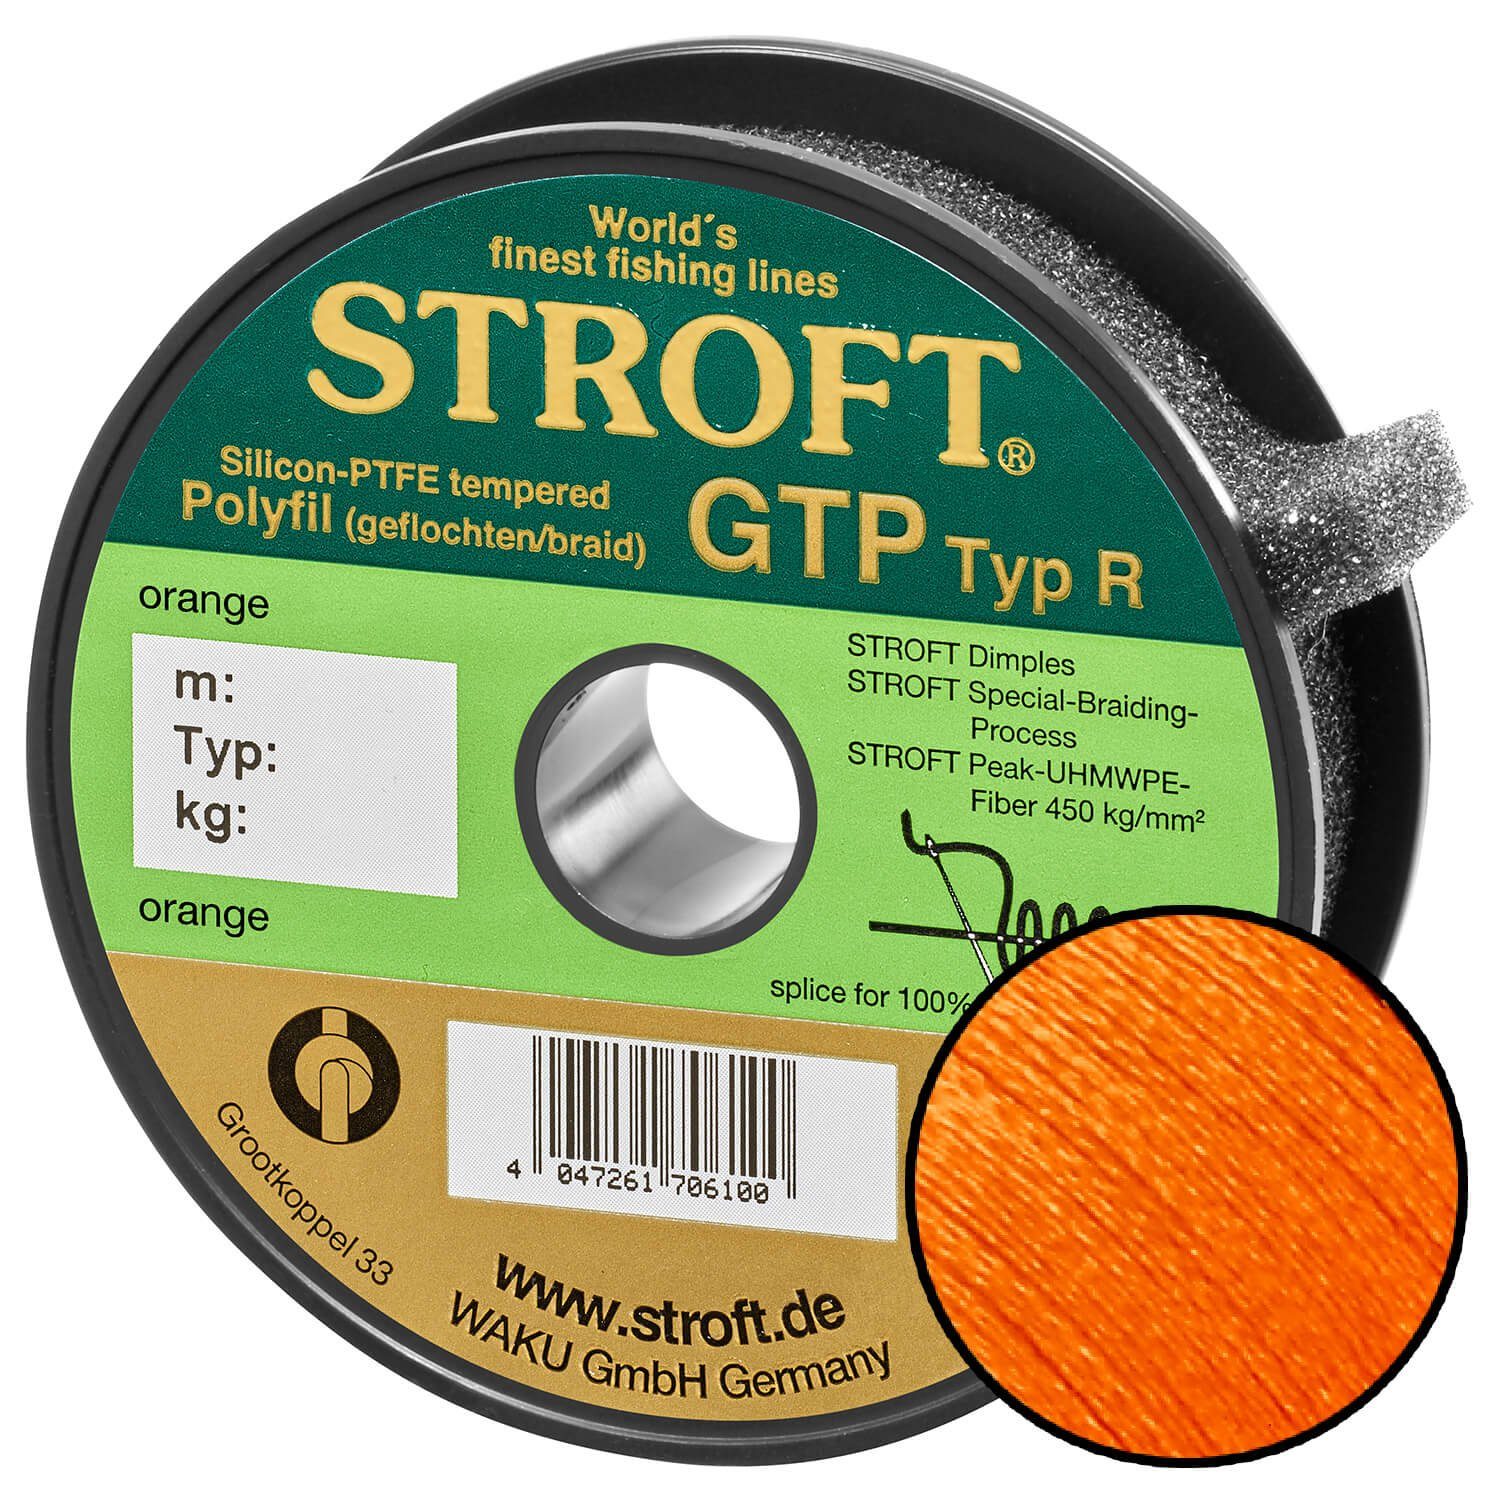 Stroft Angelschnur STROFT GTP Typ R Geflochtene Angelschnur 300m orange, 300 m Länge, 0.15 mm Fadendurchmesser, (1-St), 4.5kg Tragkraft